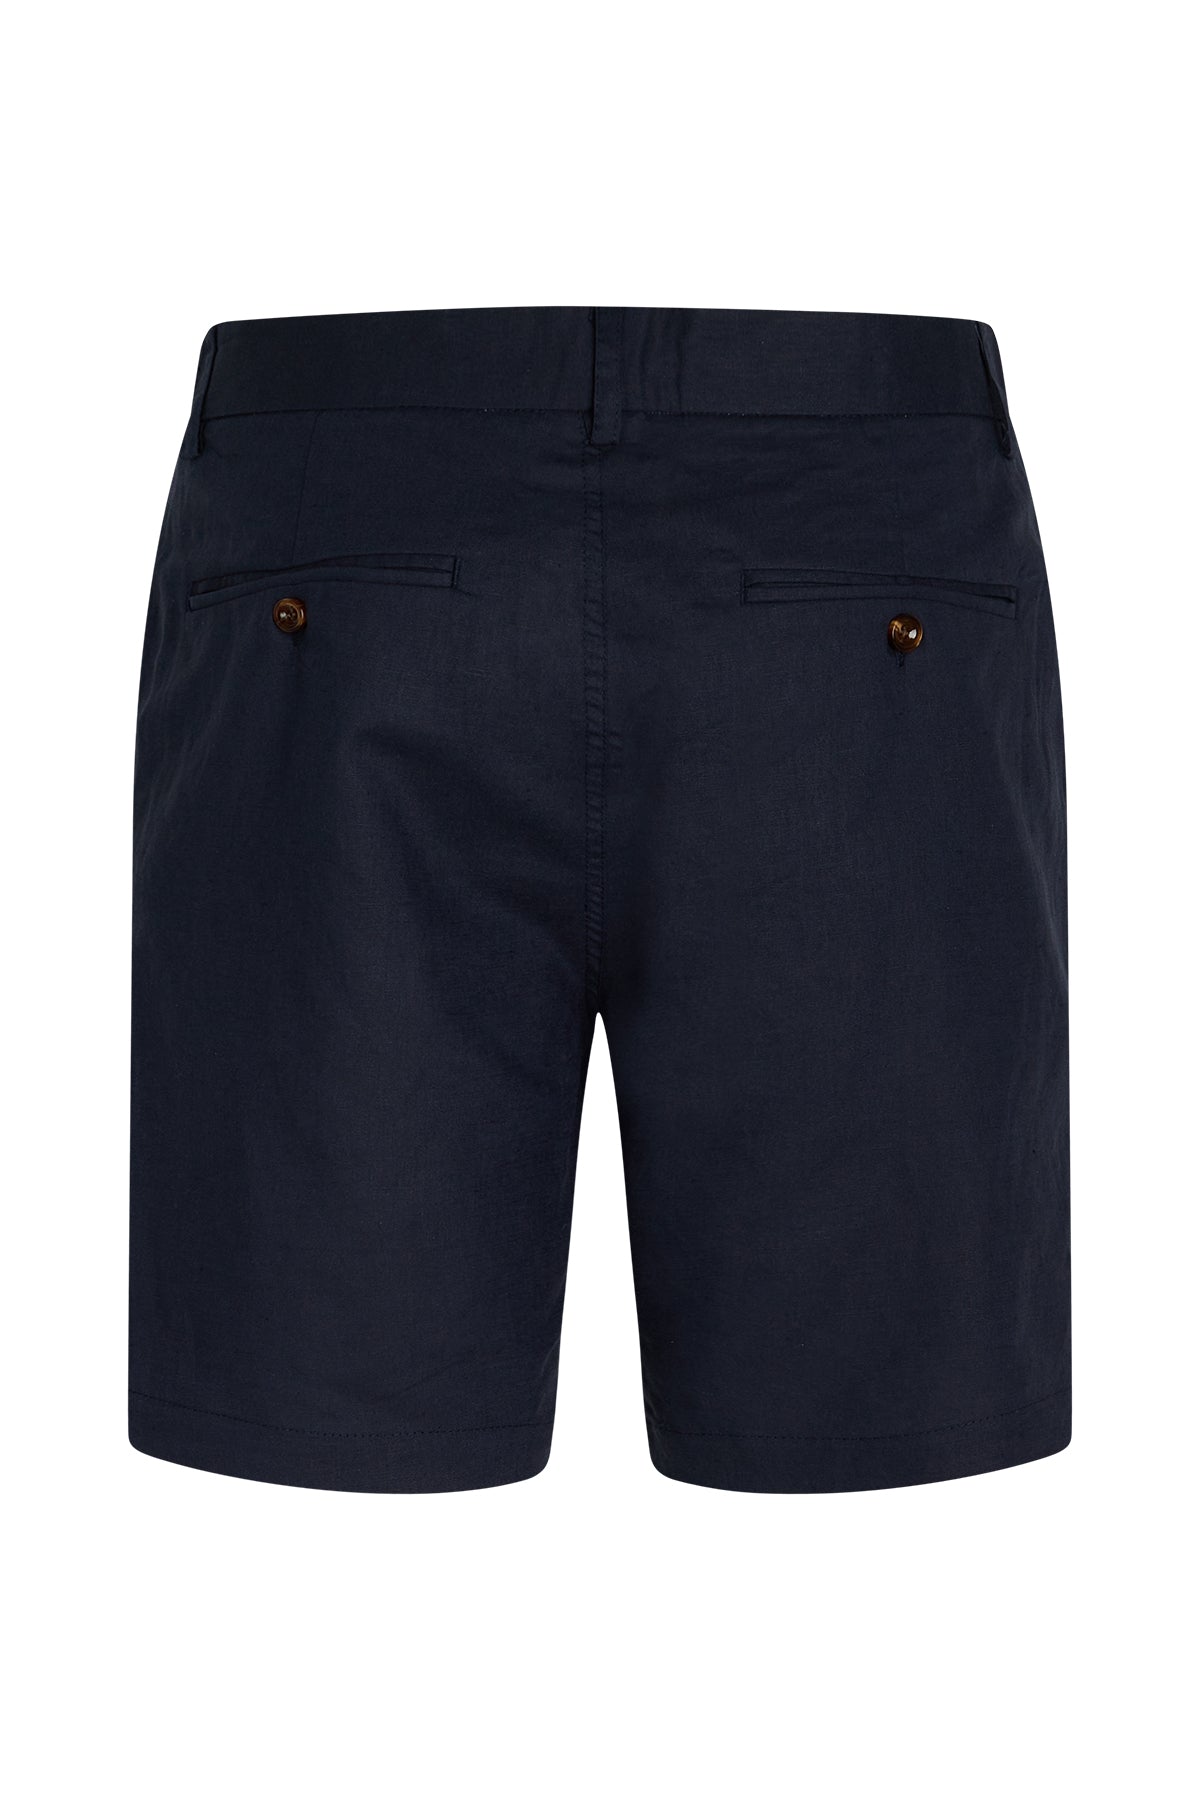 Bruuns Bazaar Men - Lino Germain Shorts - Navy Blazer